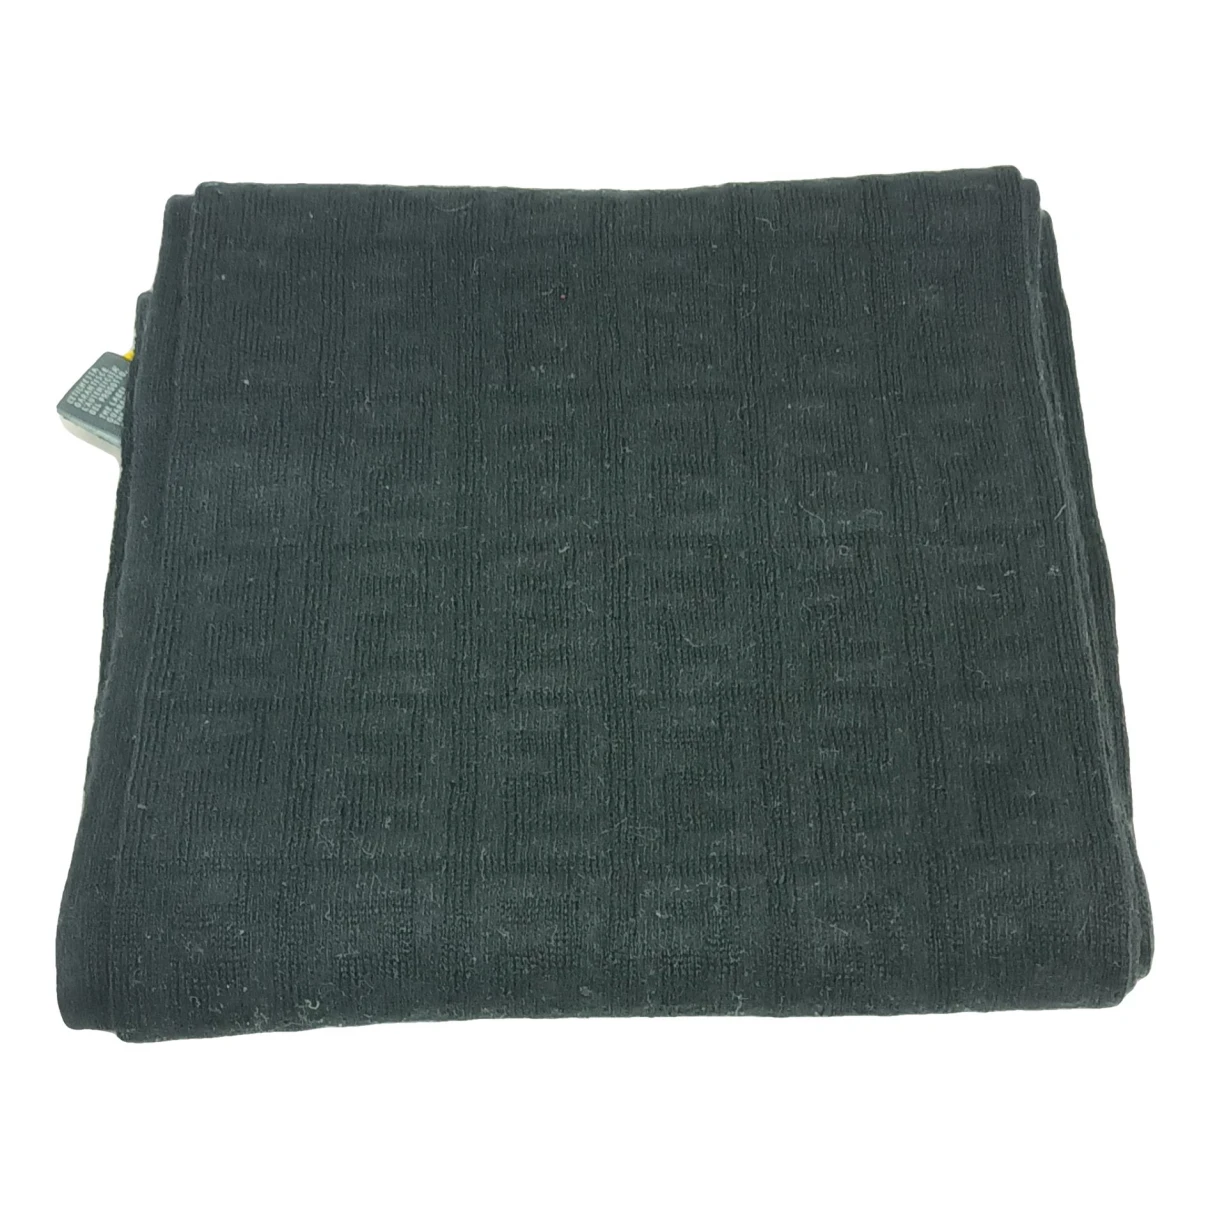 Pre-owned Fendi Wool Scarf In Black